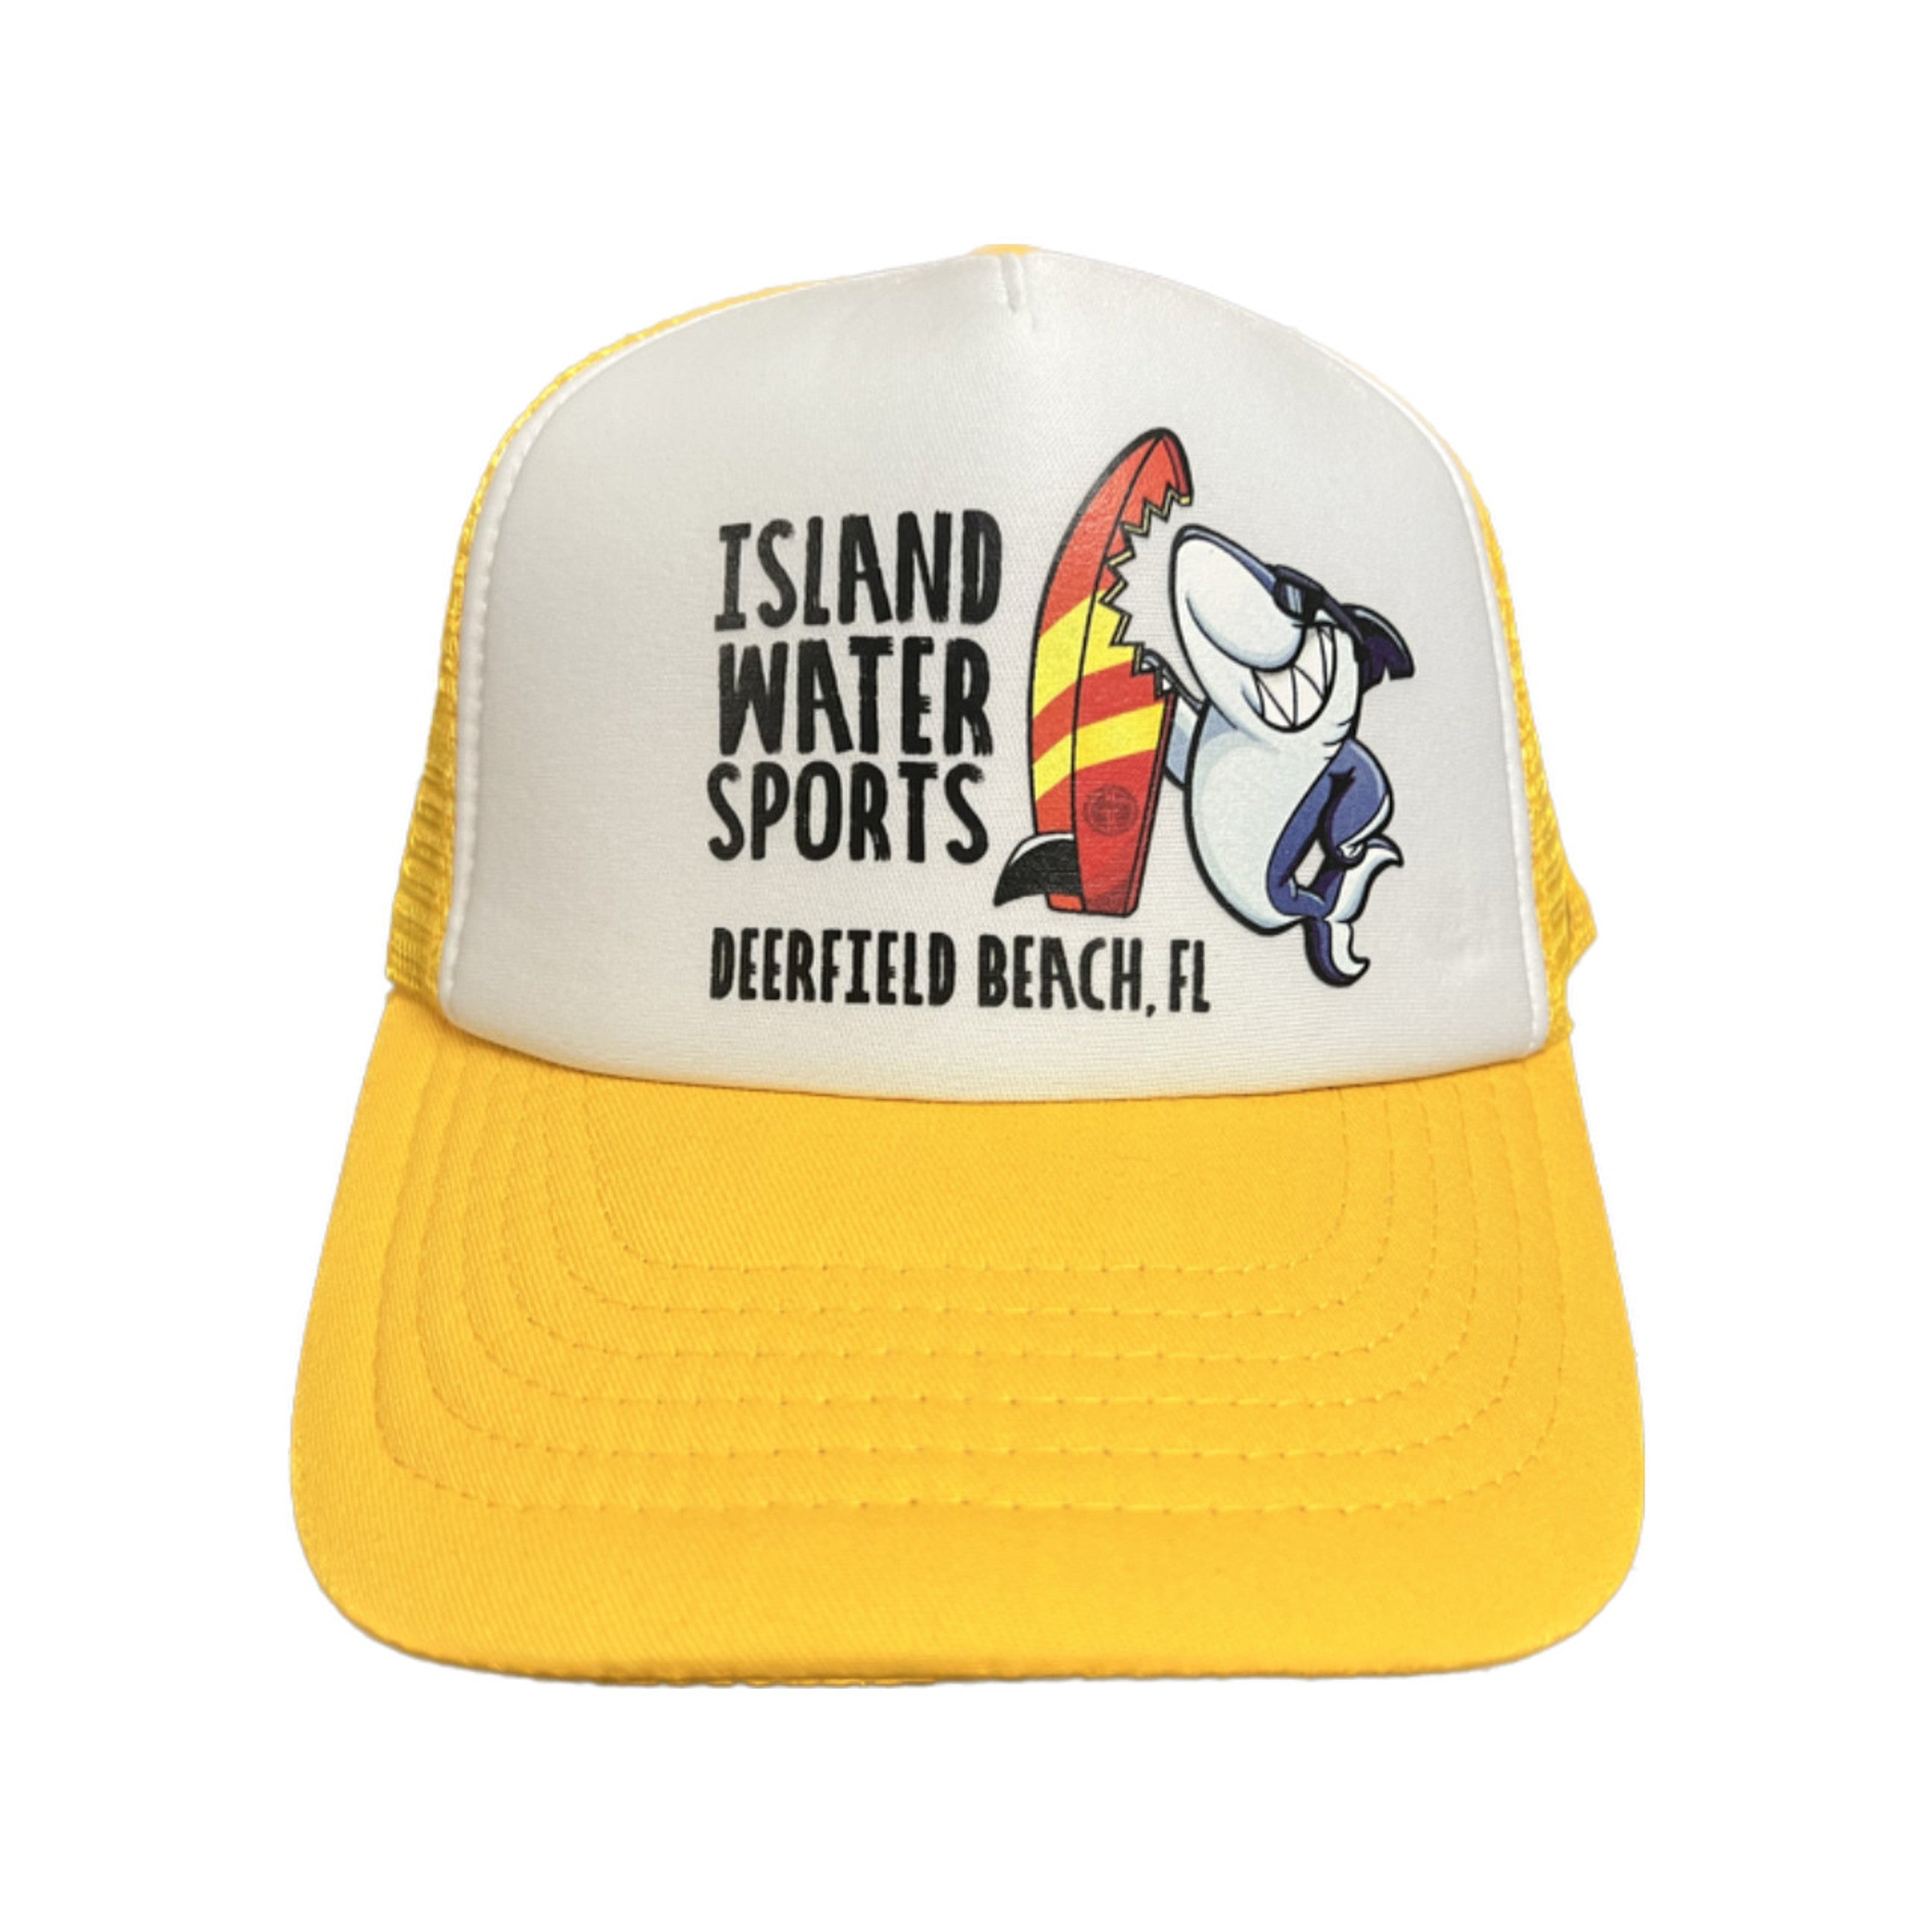 Grom Squad IWS Board Meeting Trucker Hat Yellow Big